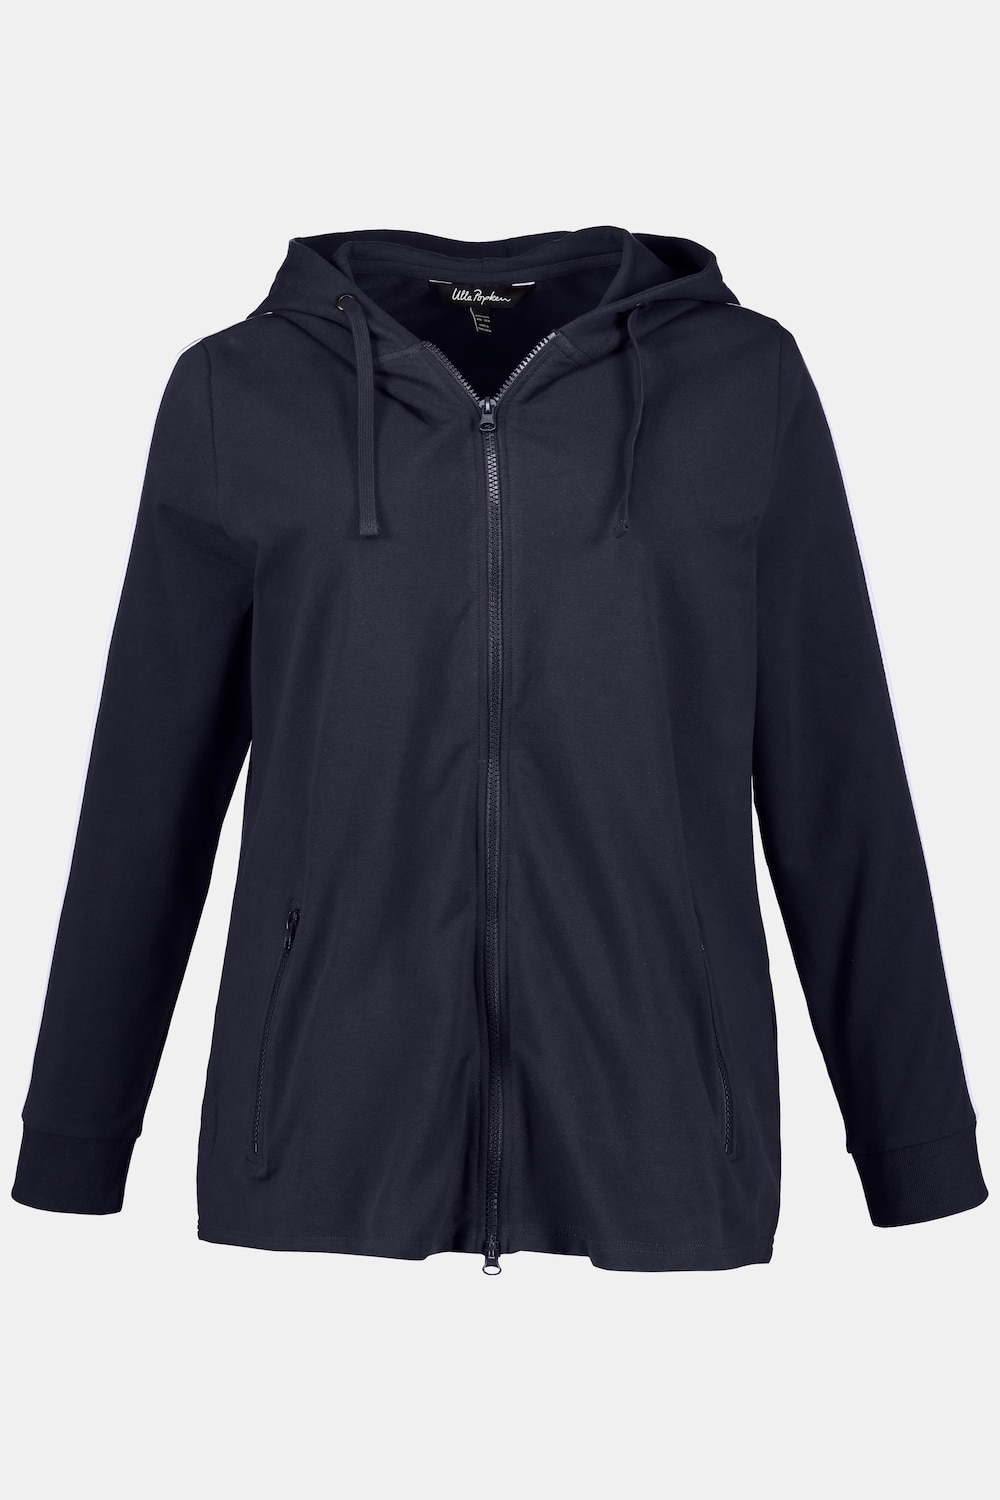 Plus Size Double Stripe Zip Front Sweatshirt Jacket, Woman, blue, size: 16/18, cotton, Ulla Popken